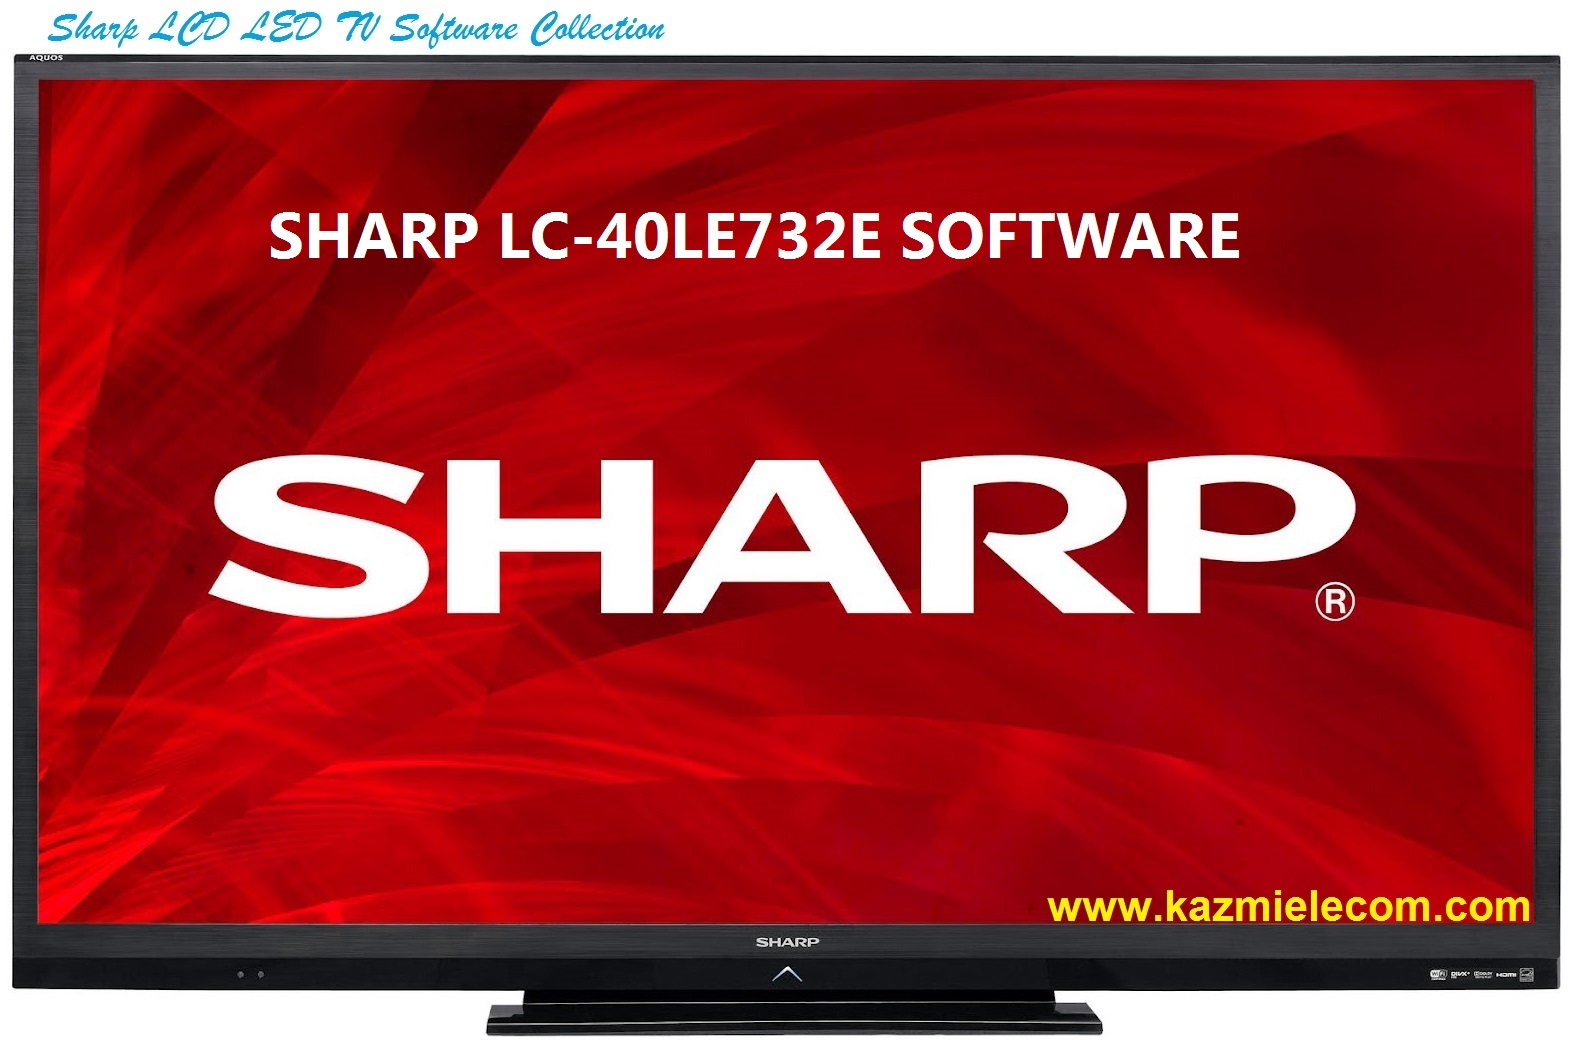 Sharp Lc-40Le732E